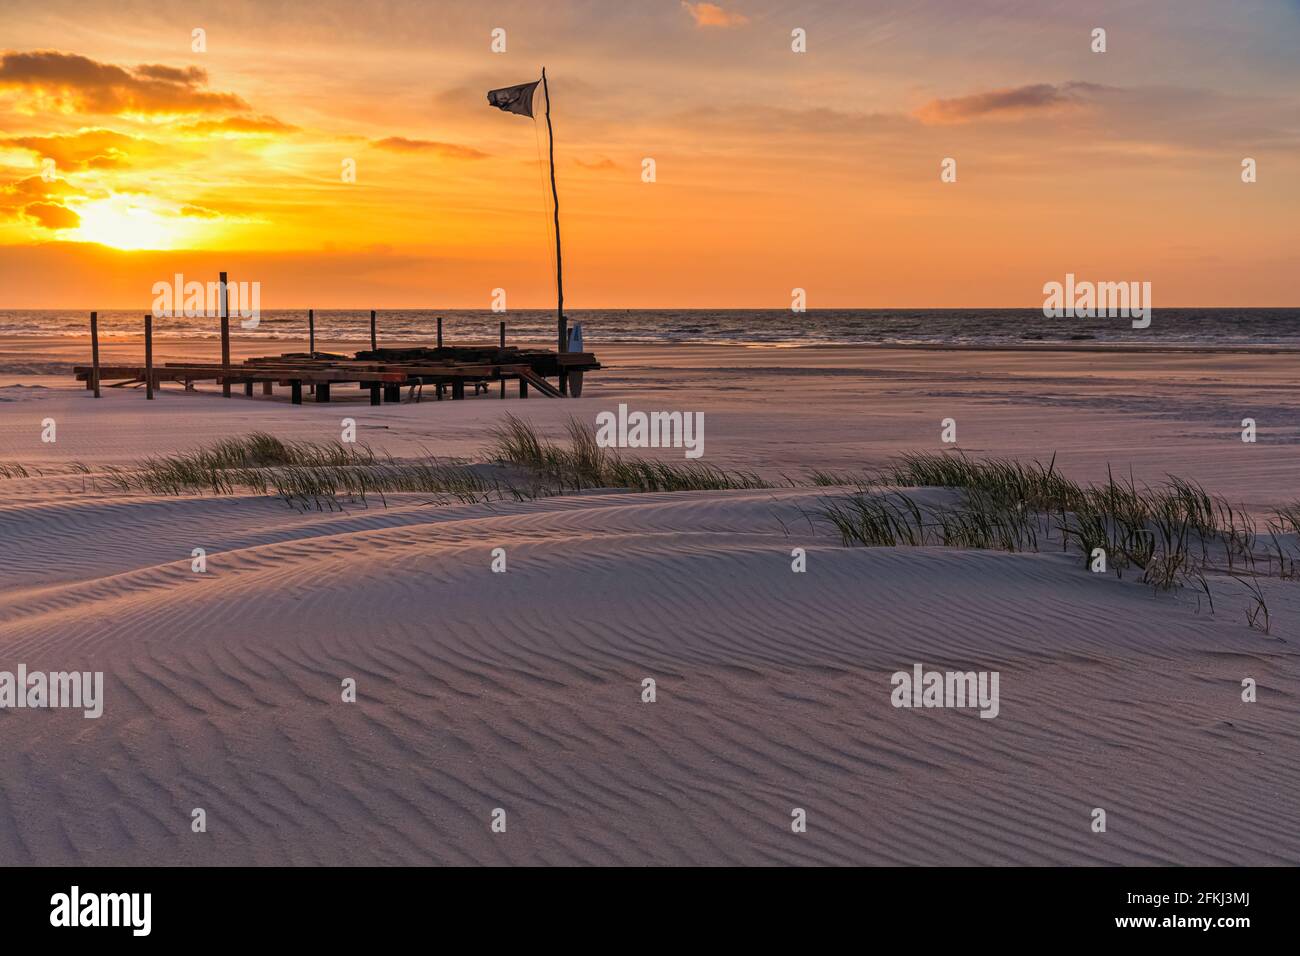 Sonnenuntergang auf der niederländischen Watteninsel Vlieland, im nördlichen Teil der Niederlande. Stockfoto